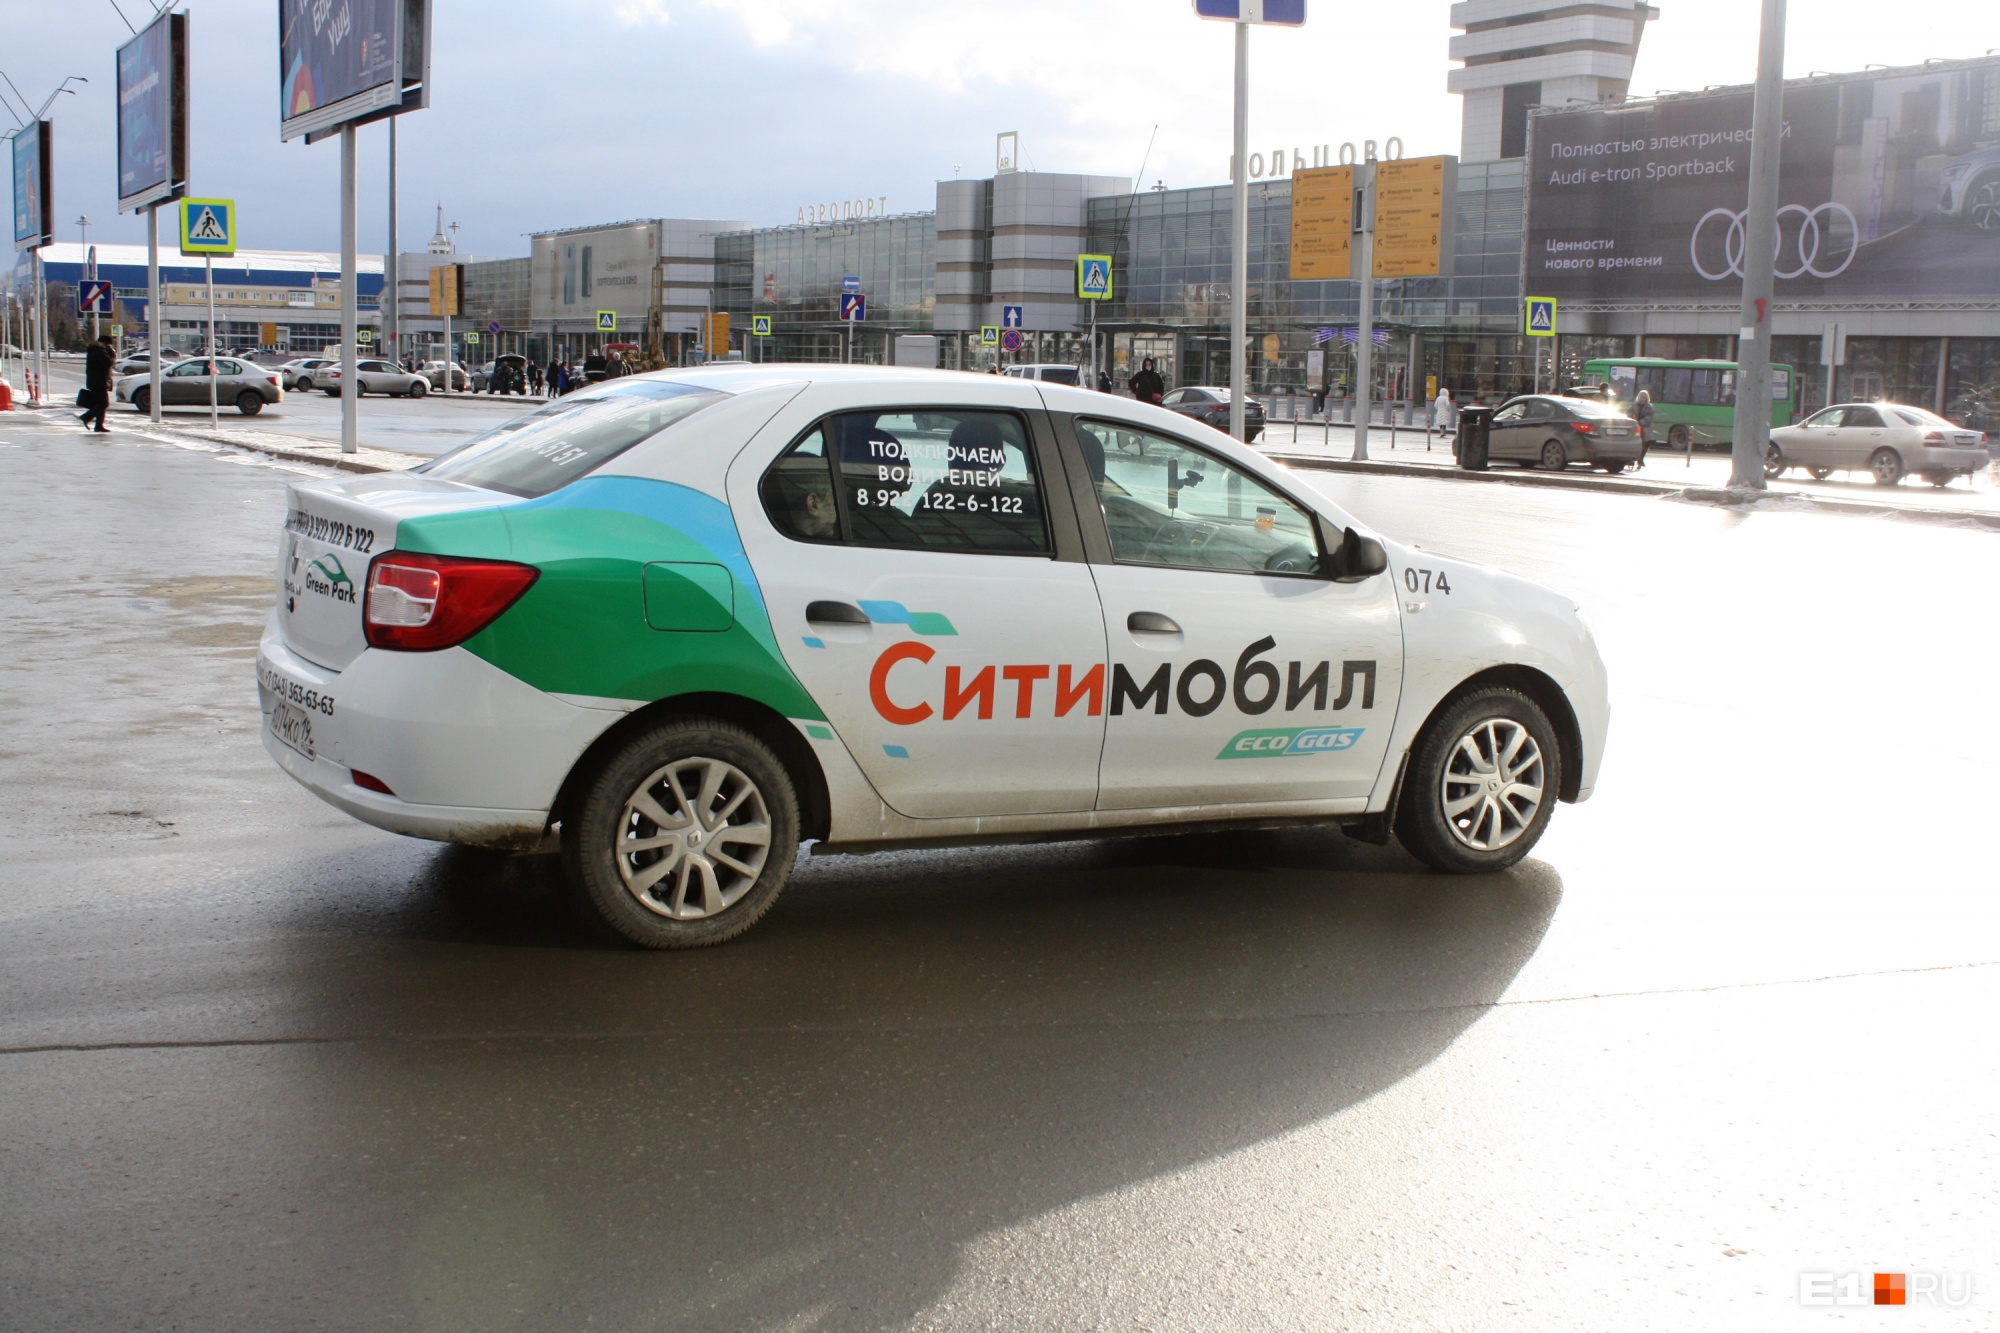 «Ужасный пиар-ход!» Грозившийся уйти сервис «Ситимобил» продолжил работать в Екатеринбурге